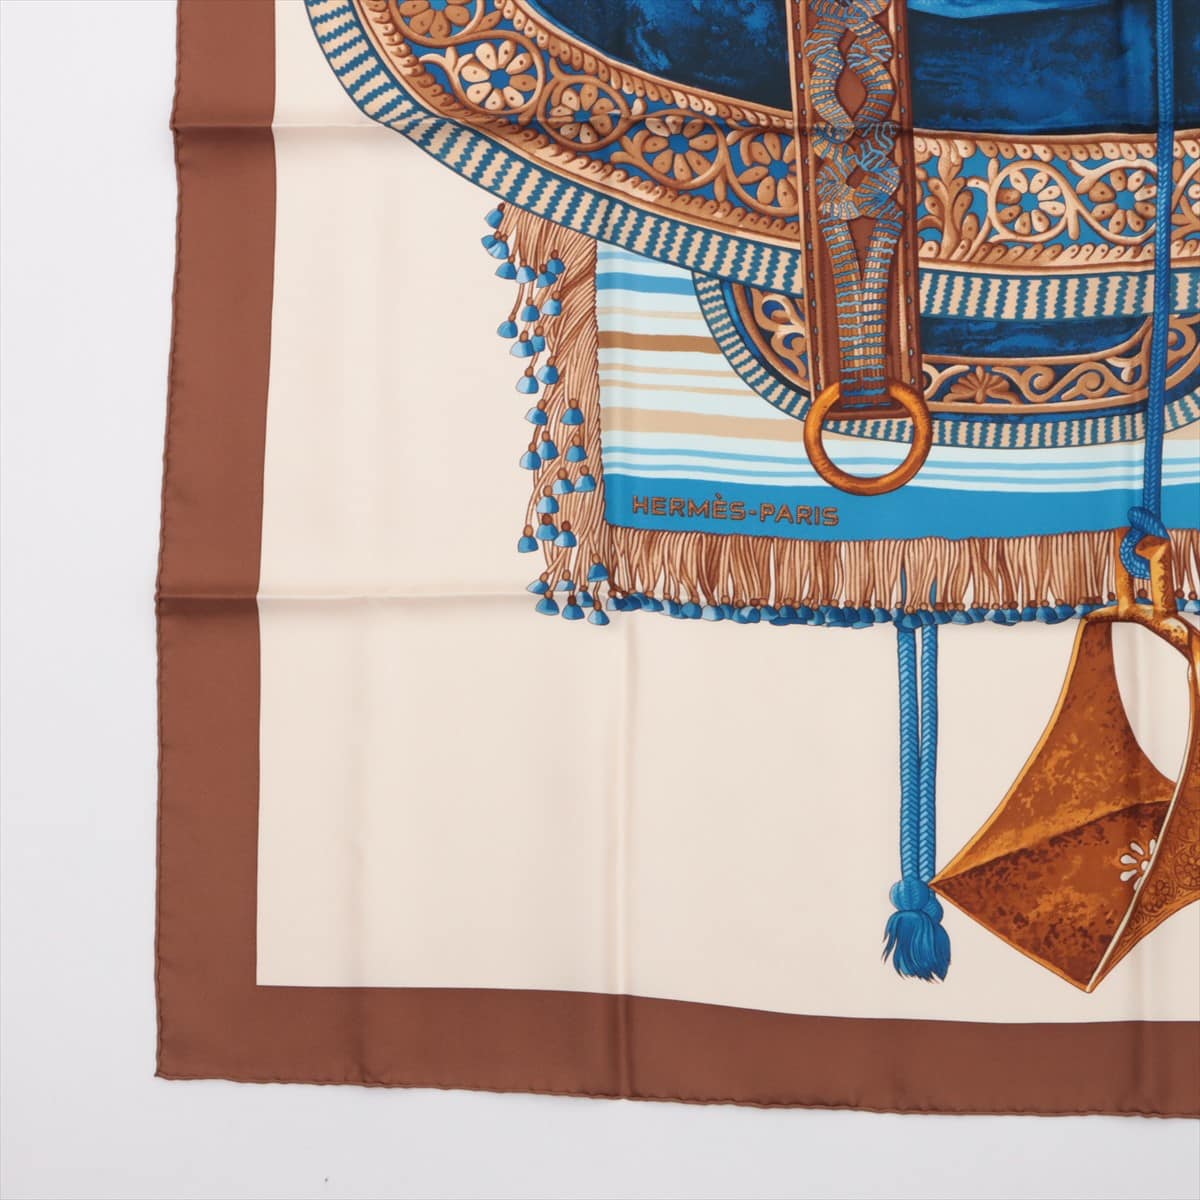 エルメス カレ90 SELLE D’APPARAT MAROCAINE モロッコの儀式用鞍 スカーフ シルク ブラウン